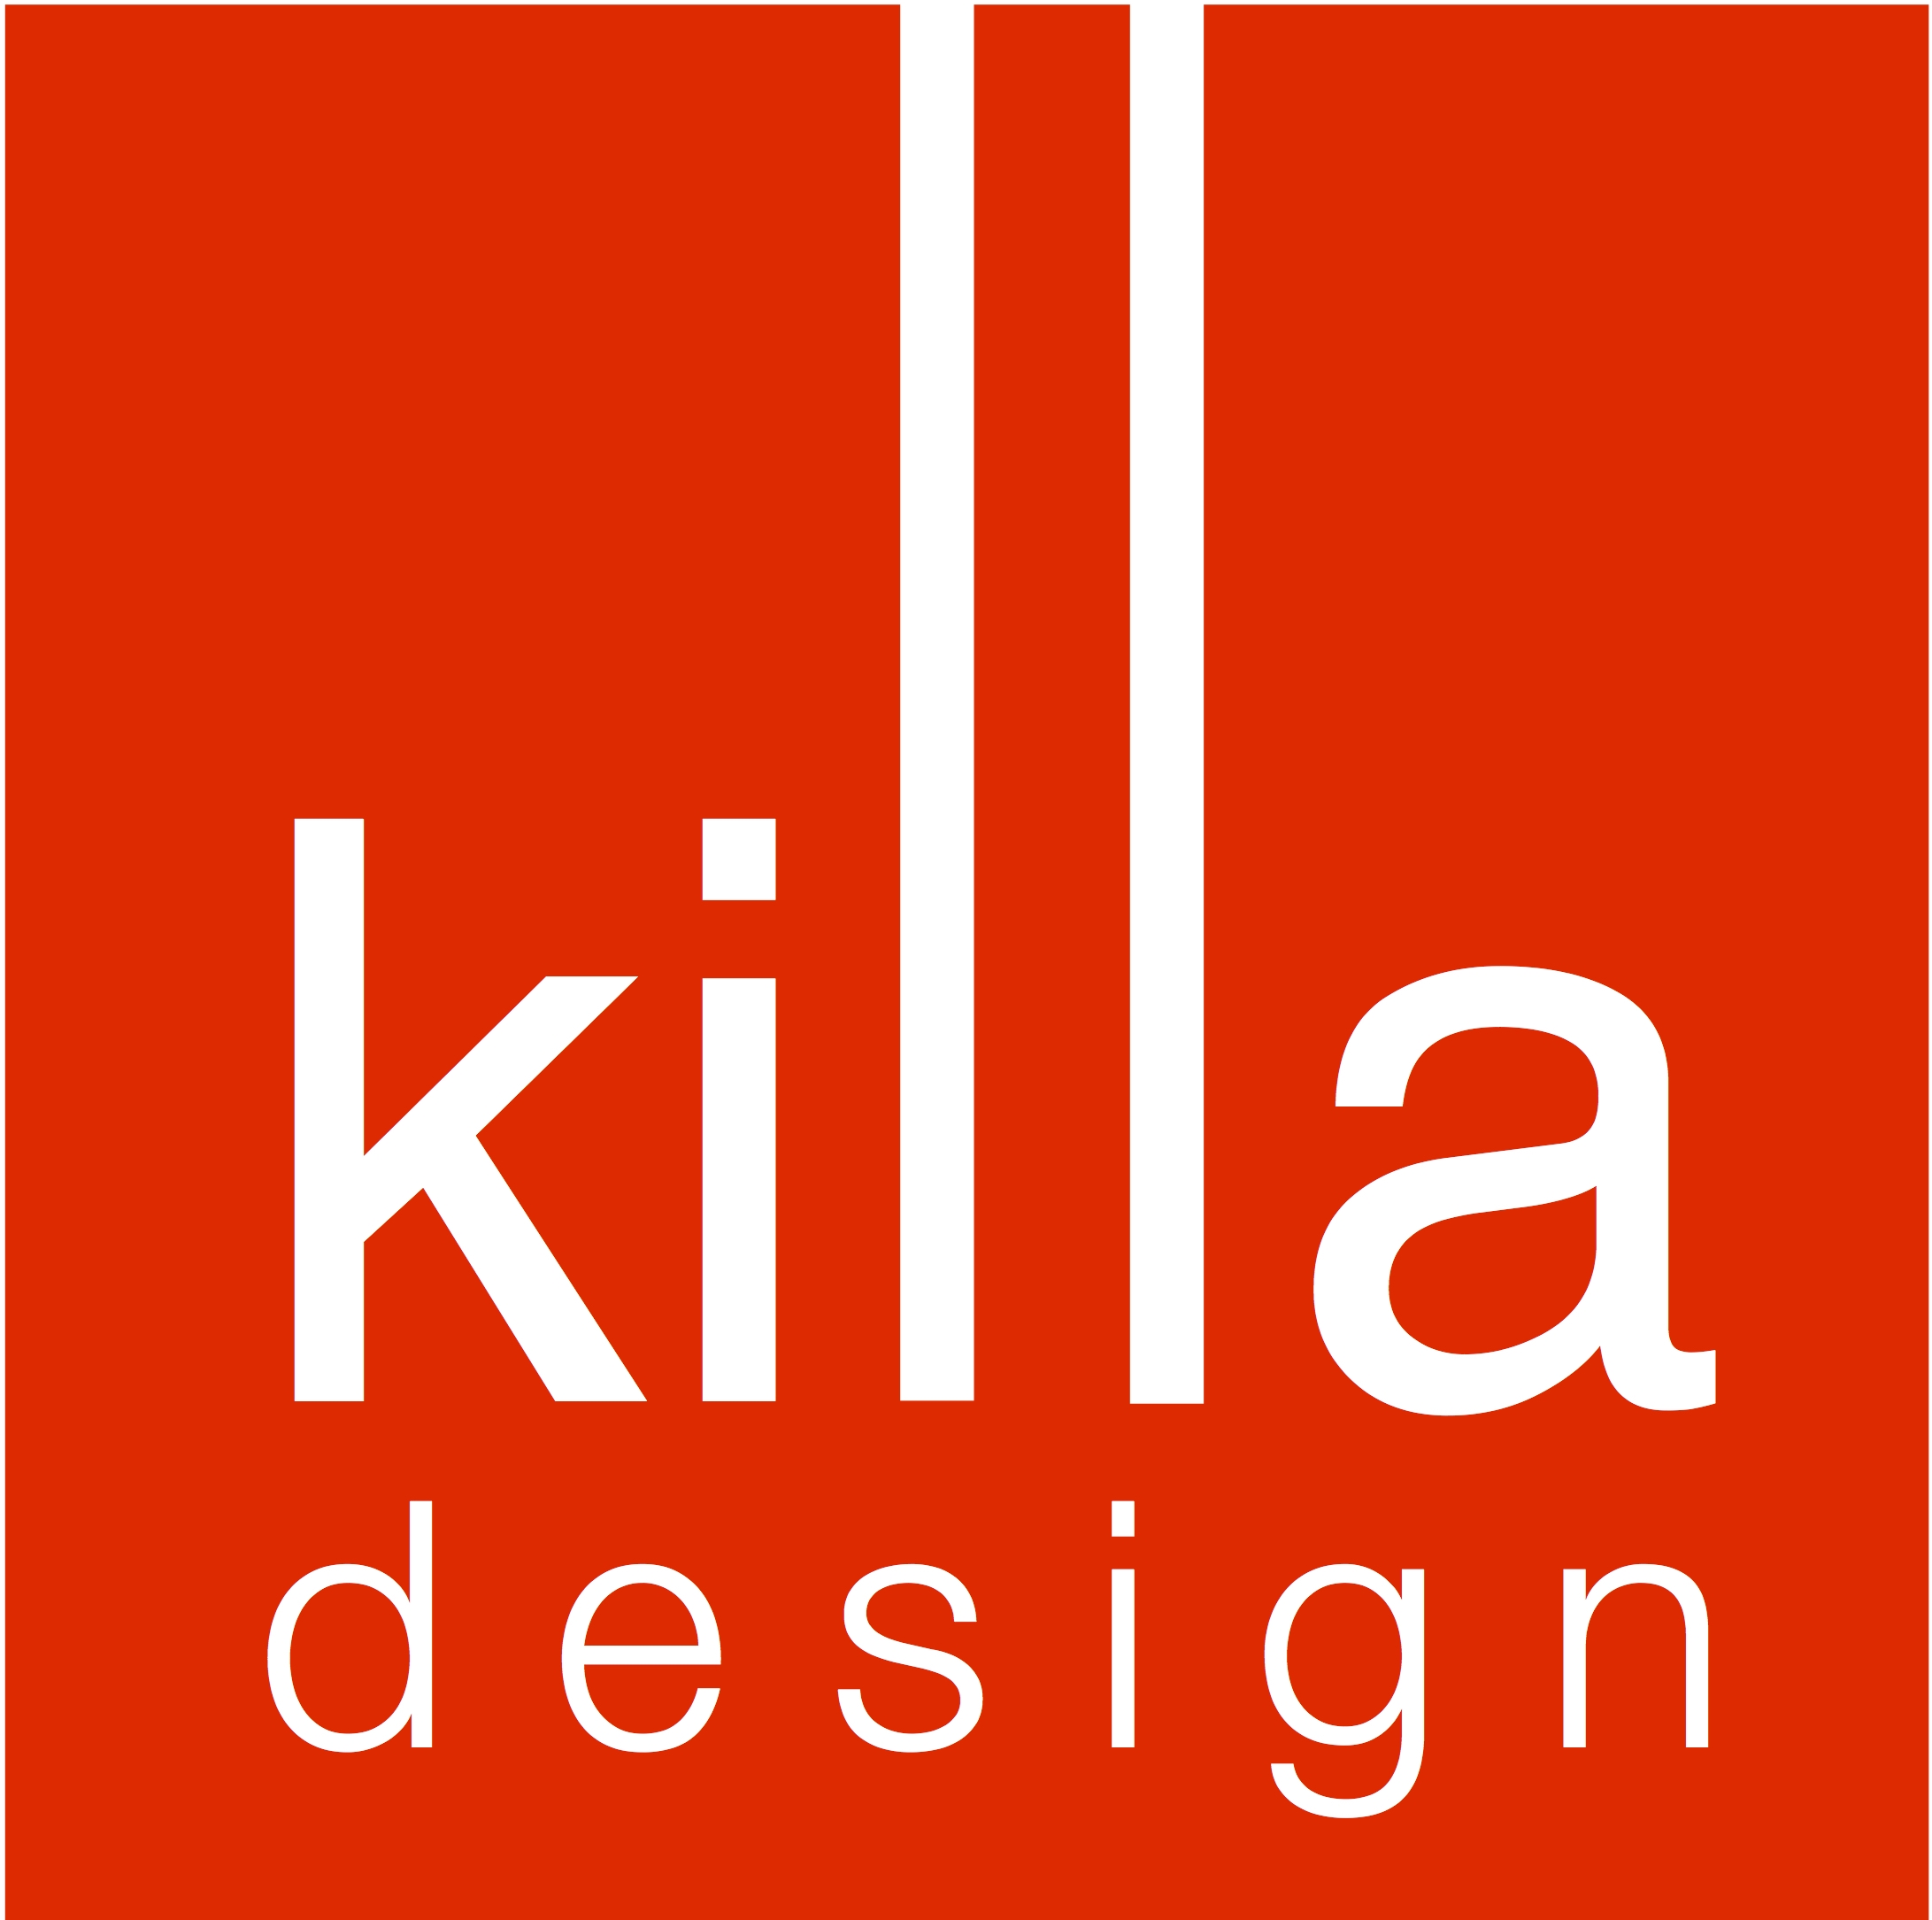 Killa design